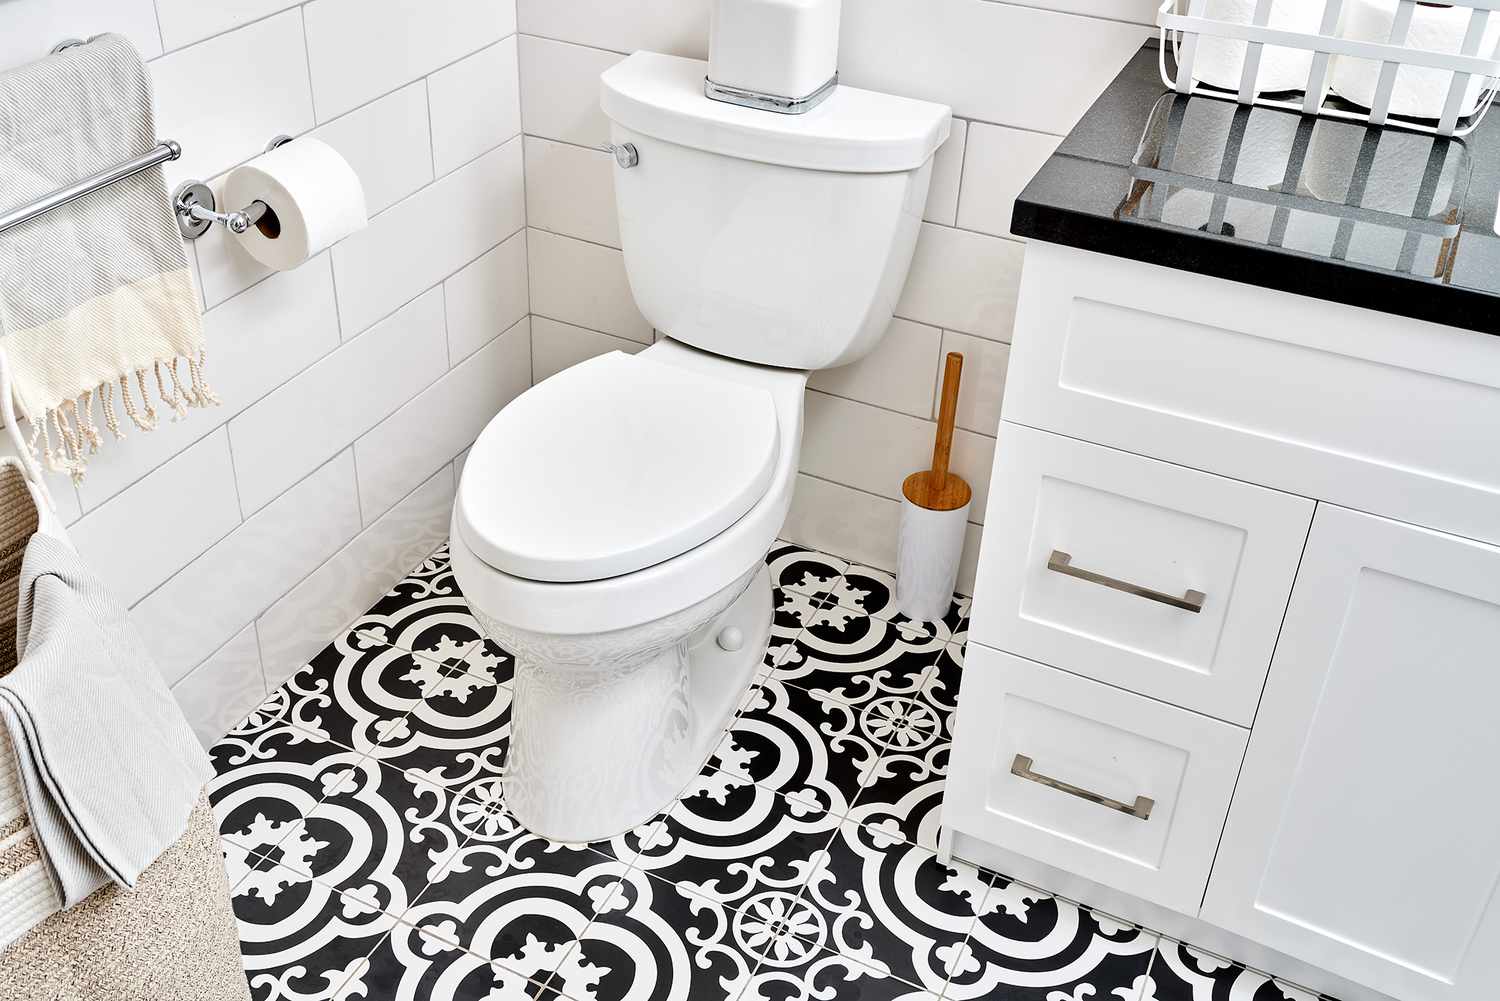 Standard-Toilette mit Schwerkraftspülung, umgeben von einem schwarz-weiß gemusterten Fliesenboden im Badezimmer